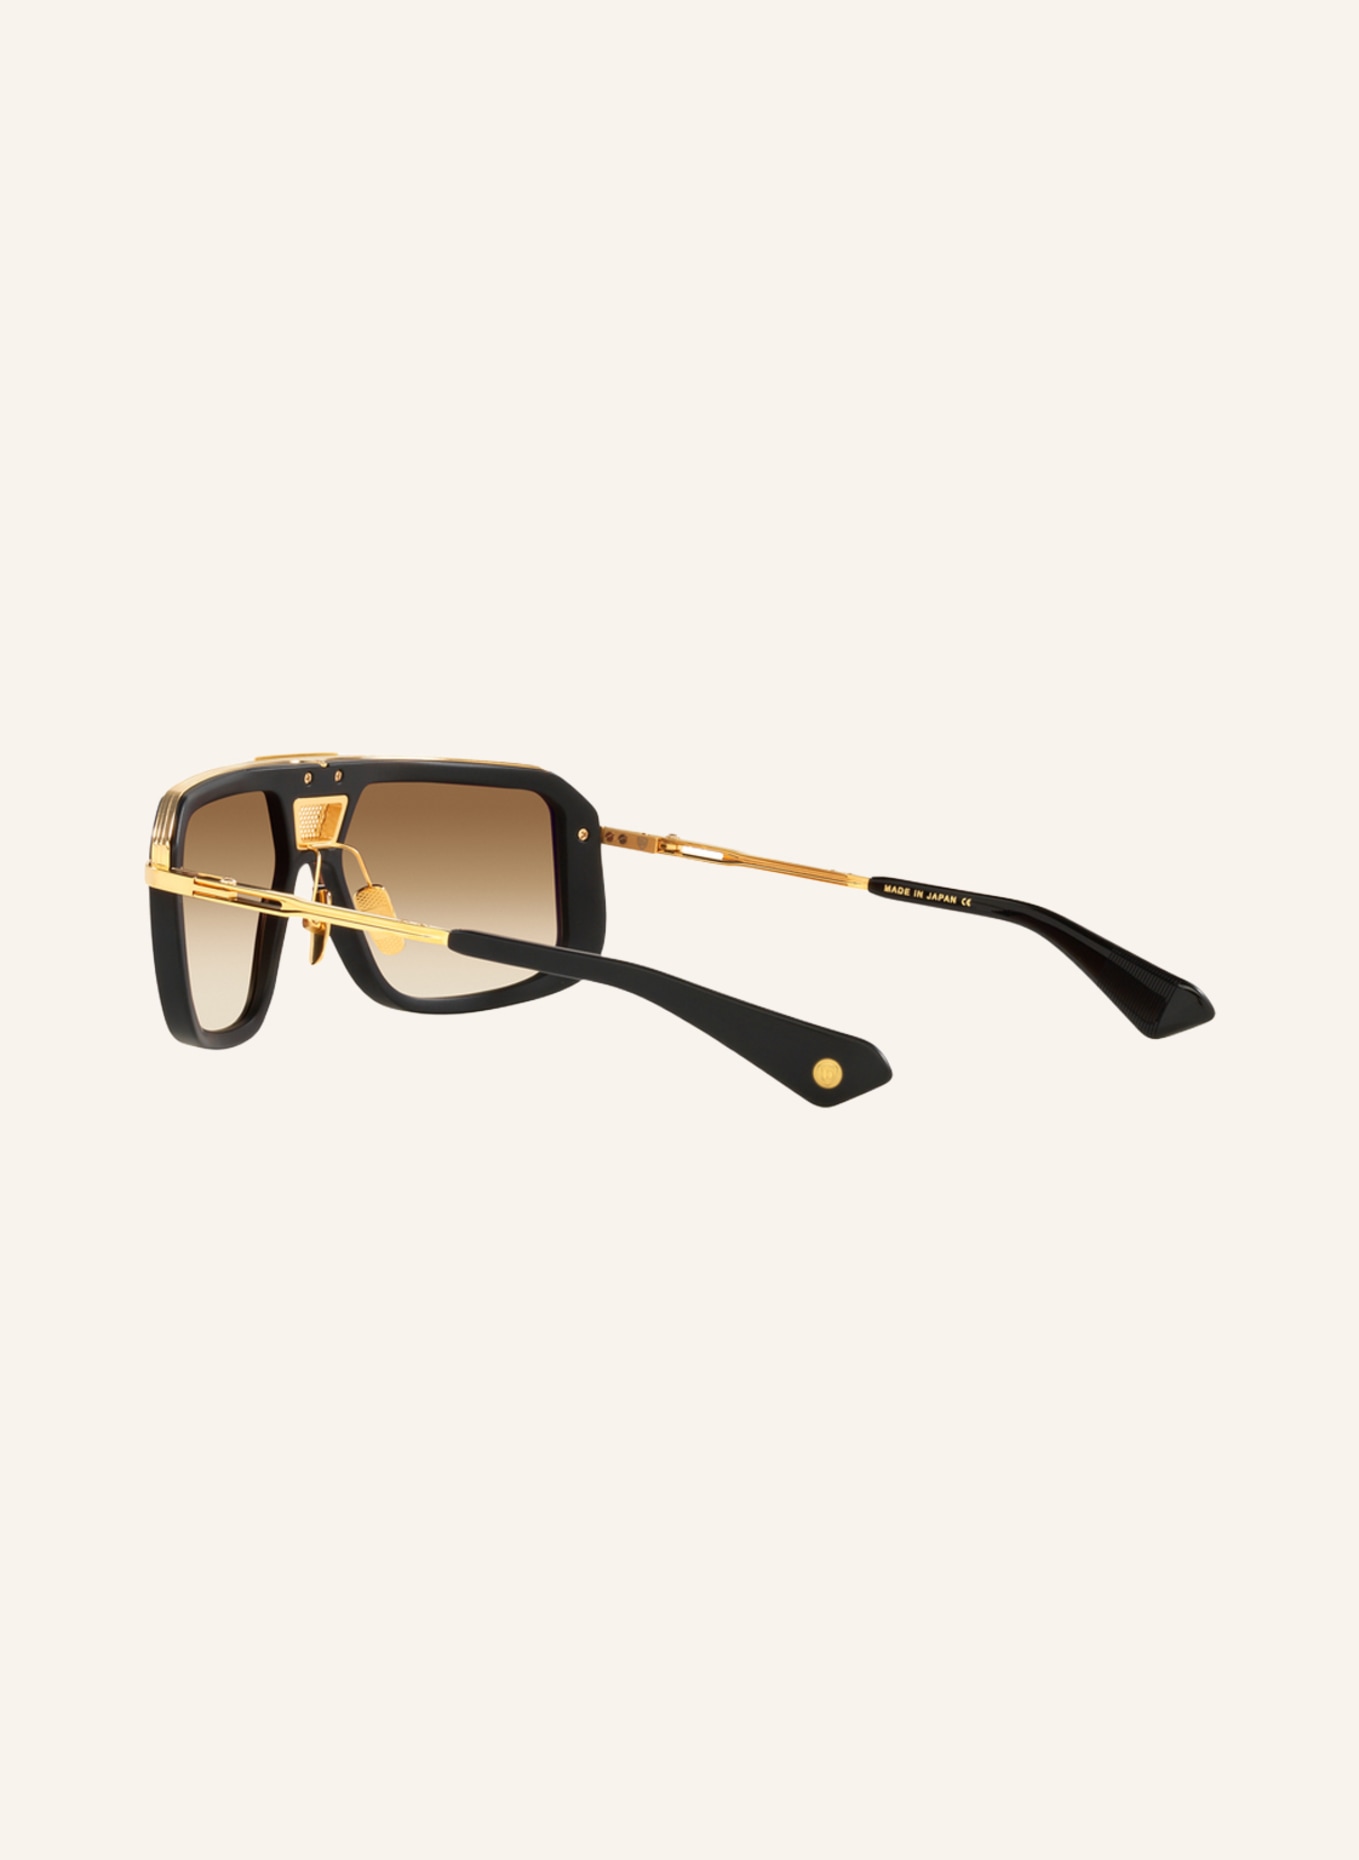 DITA Sunglasses MACH EIGHT, Color: 1220D4 - BLACK MATTE/LIGHT BROWN GRADIENT (Image 4)